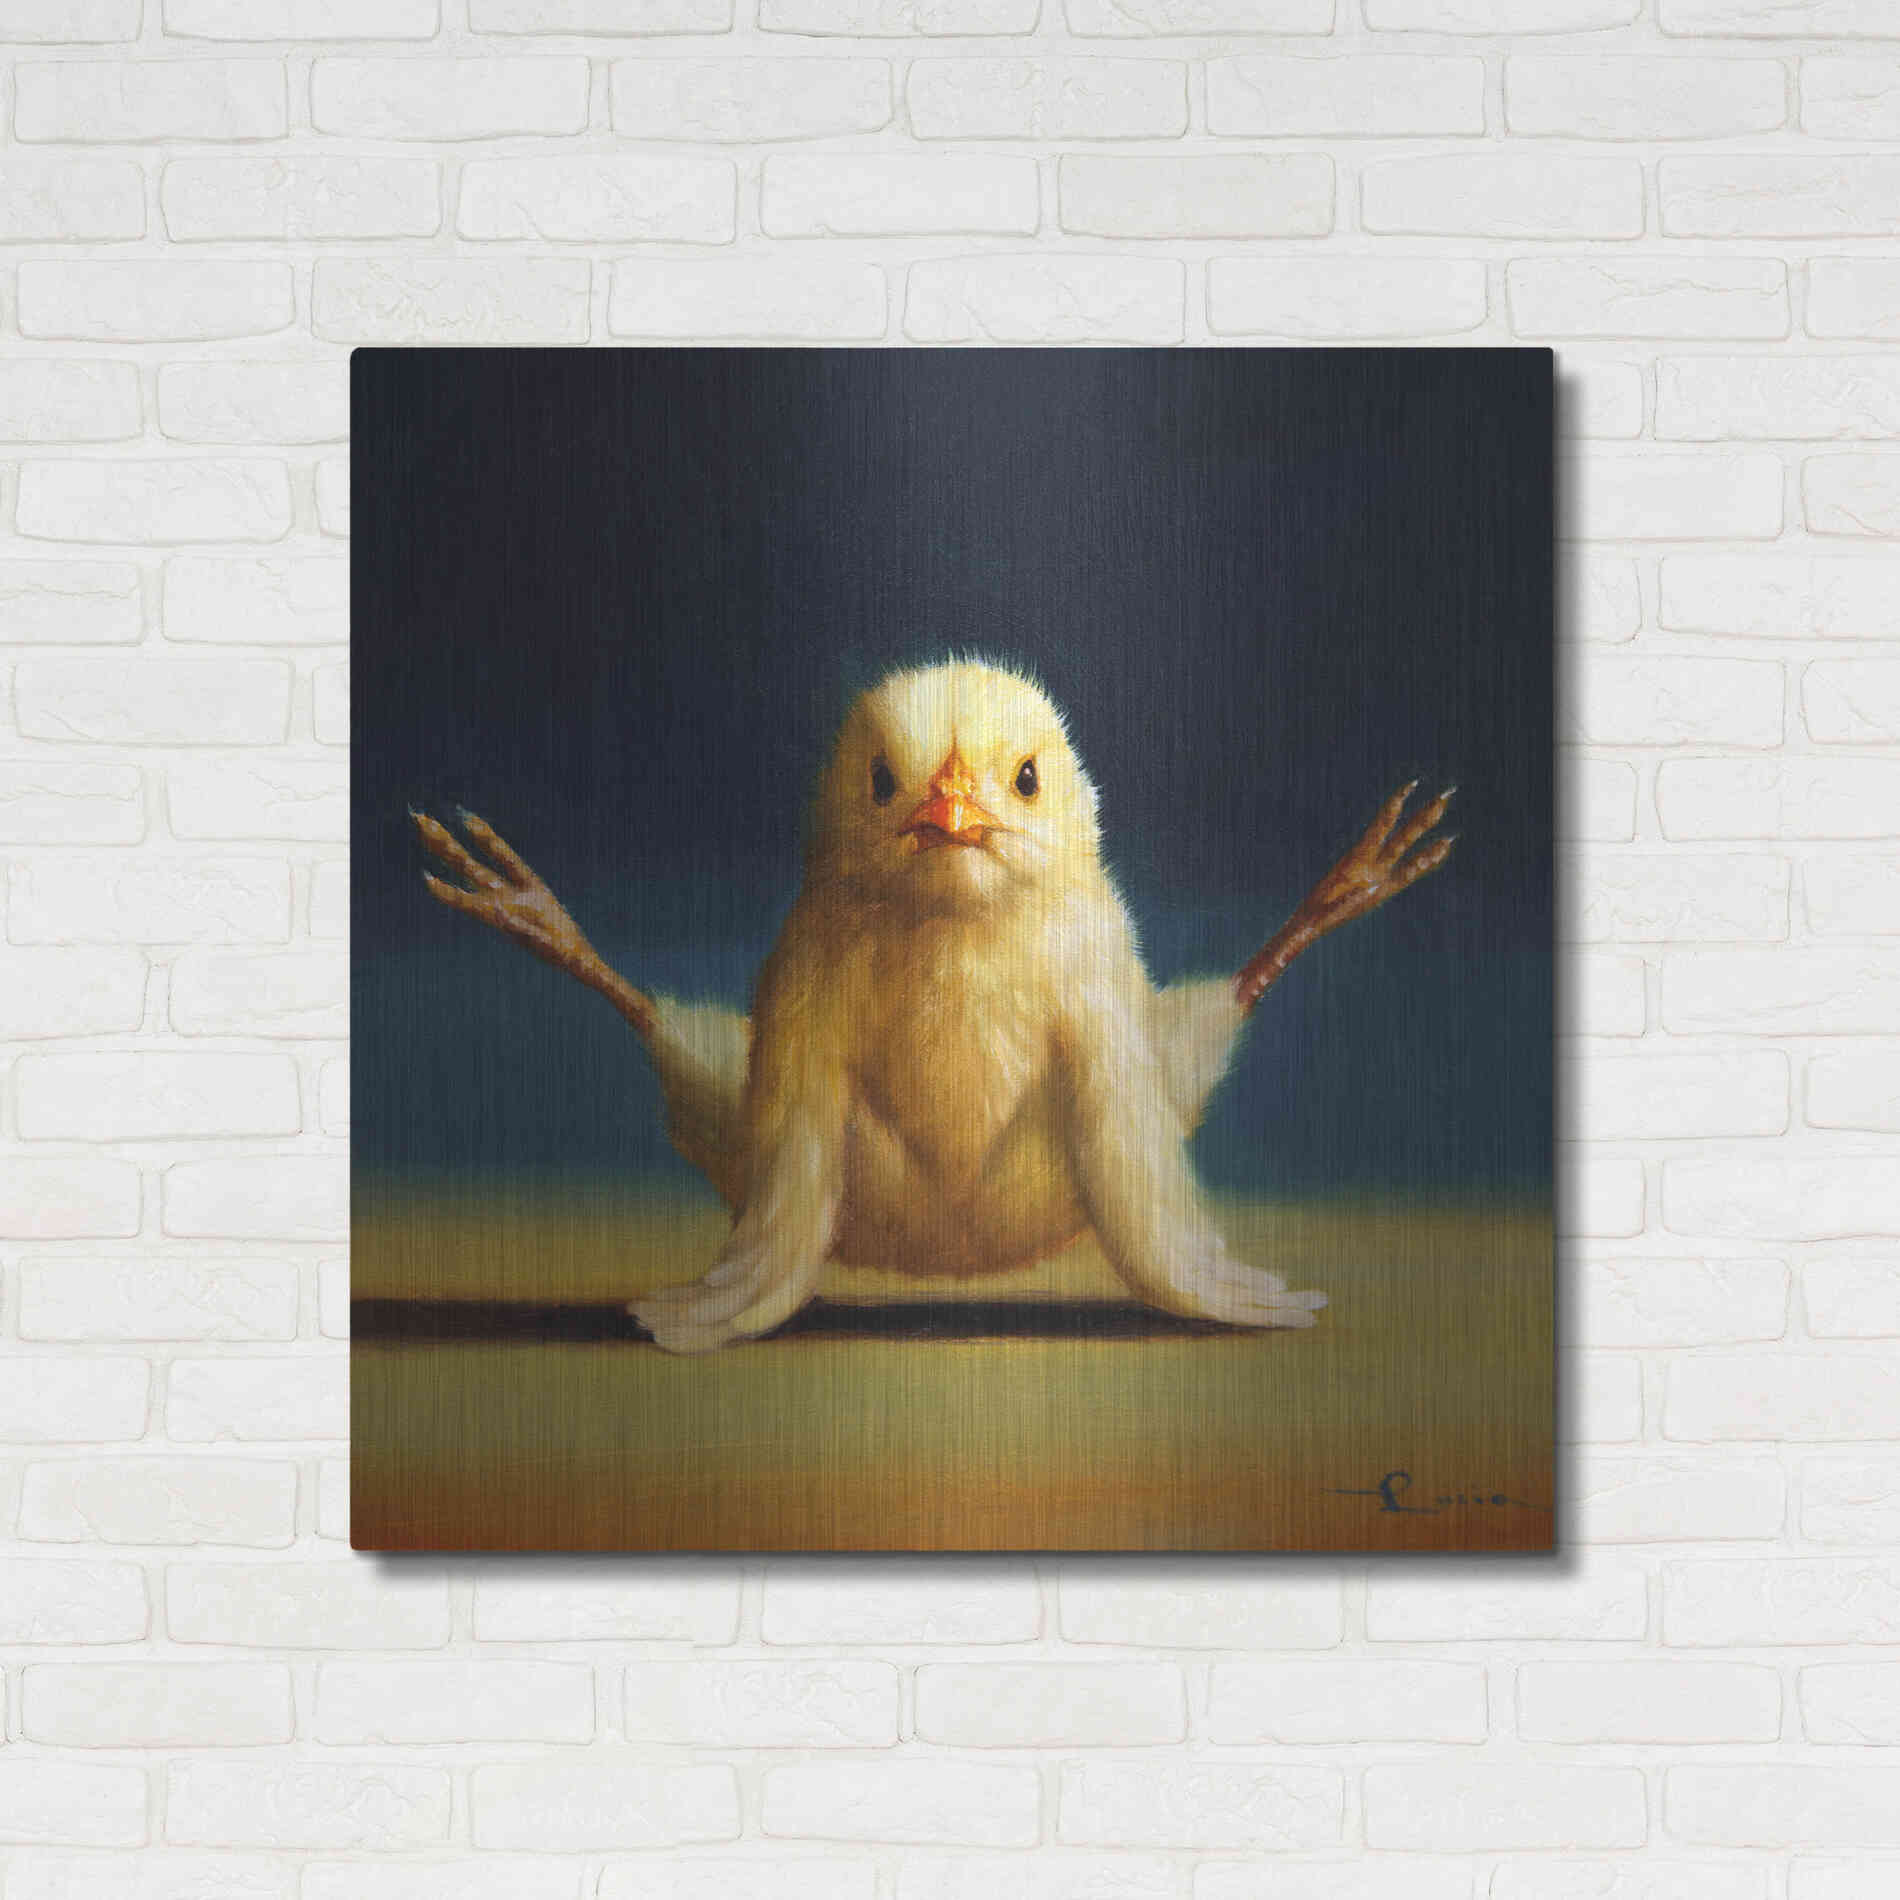 Luxe Metal Art 'Yoga Chick Firefly' by Lucia Heffernan,36x36